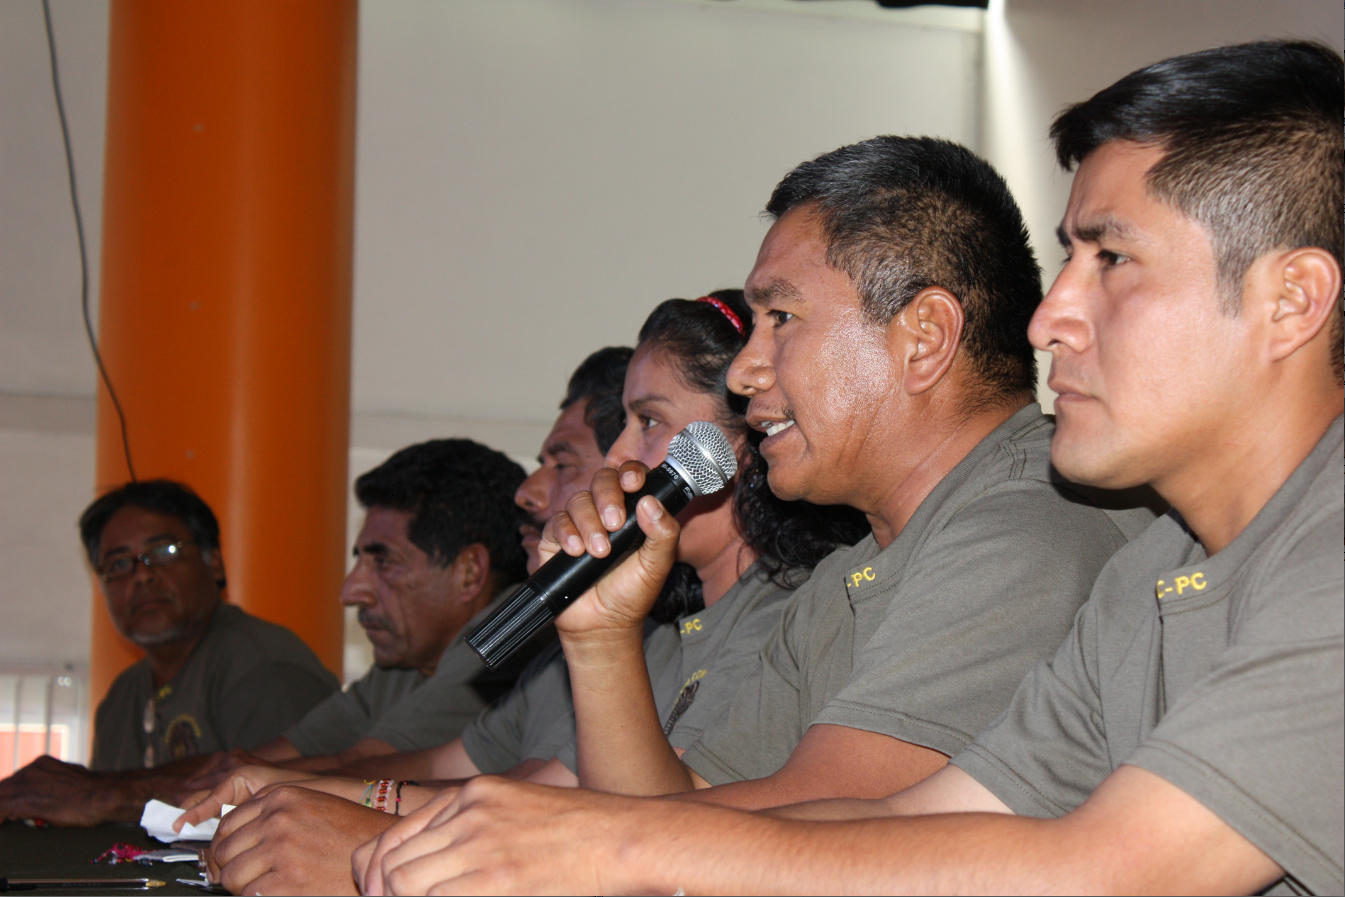 Imagen de la CRAC-PC durante la presentación de sus actuales coordinadores. Con el micrófono Elíseo Villar Castillo